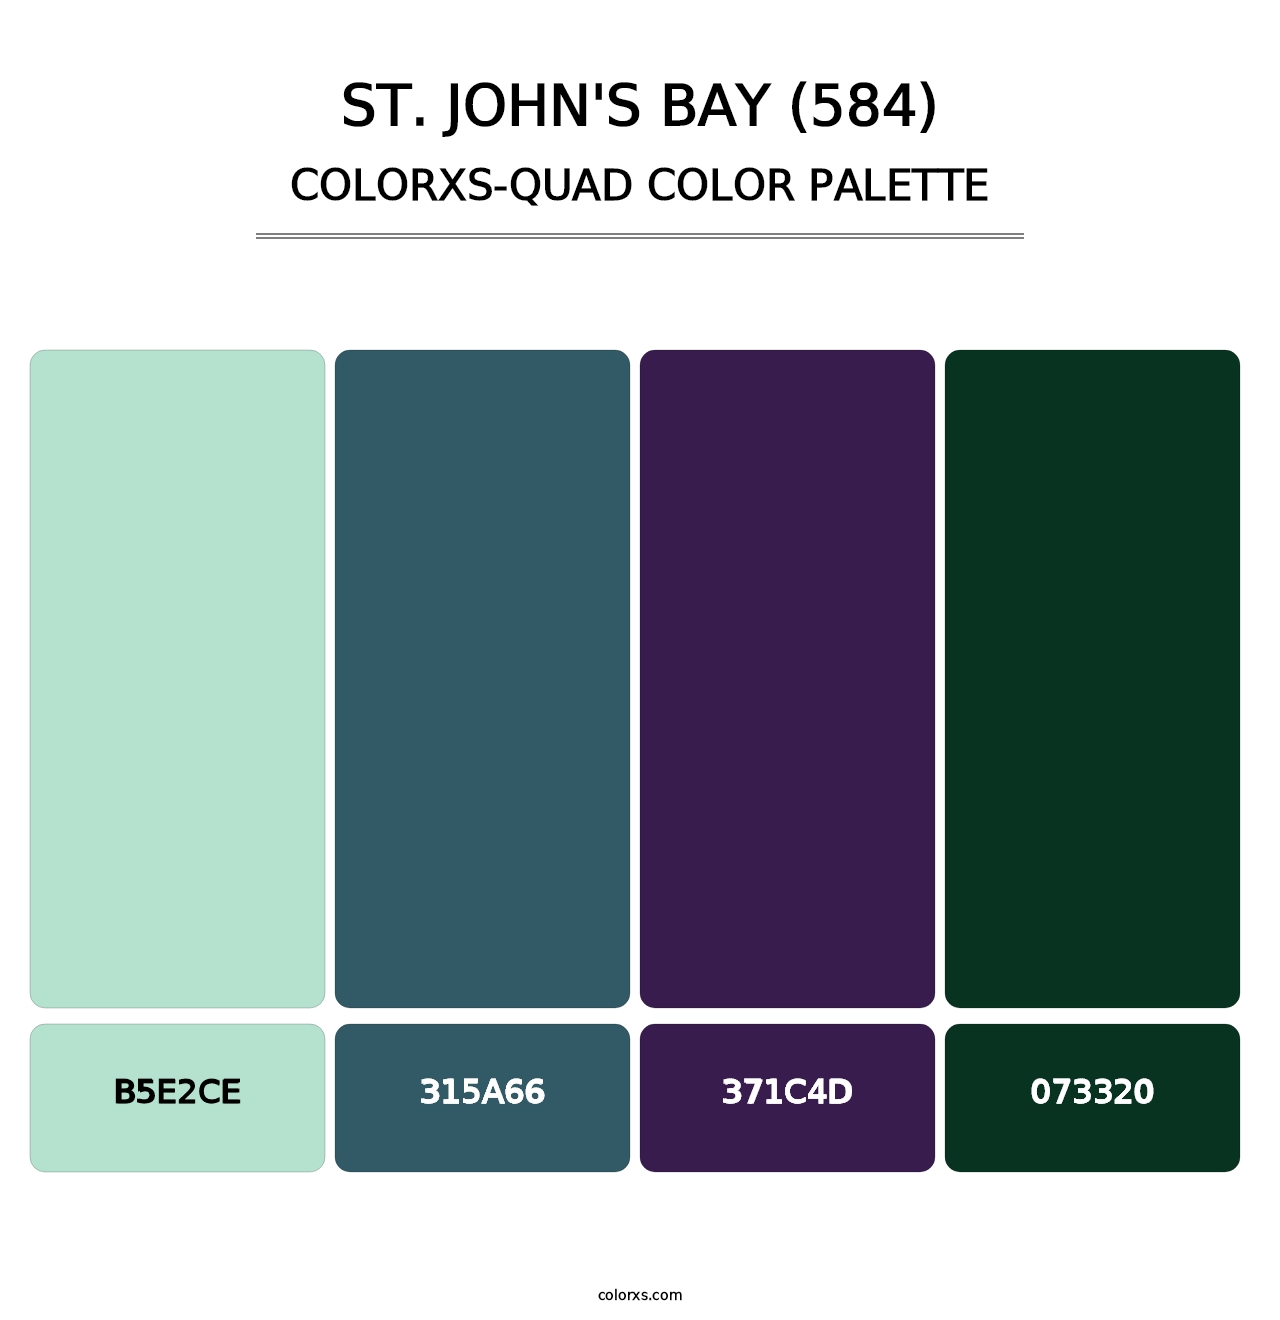 St. John's Bay (584) - Colorxs Quad Palette